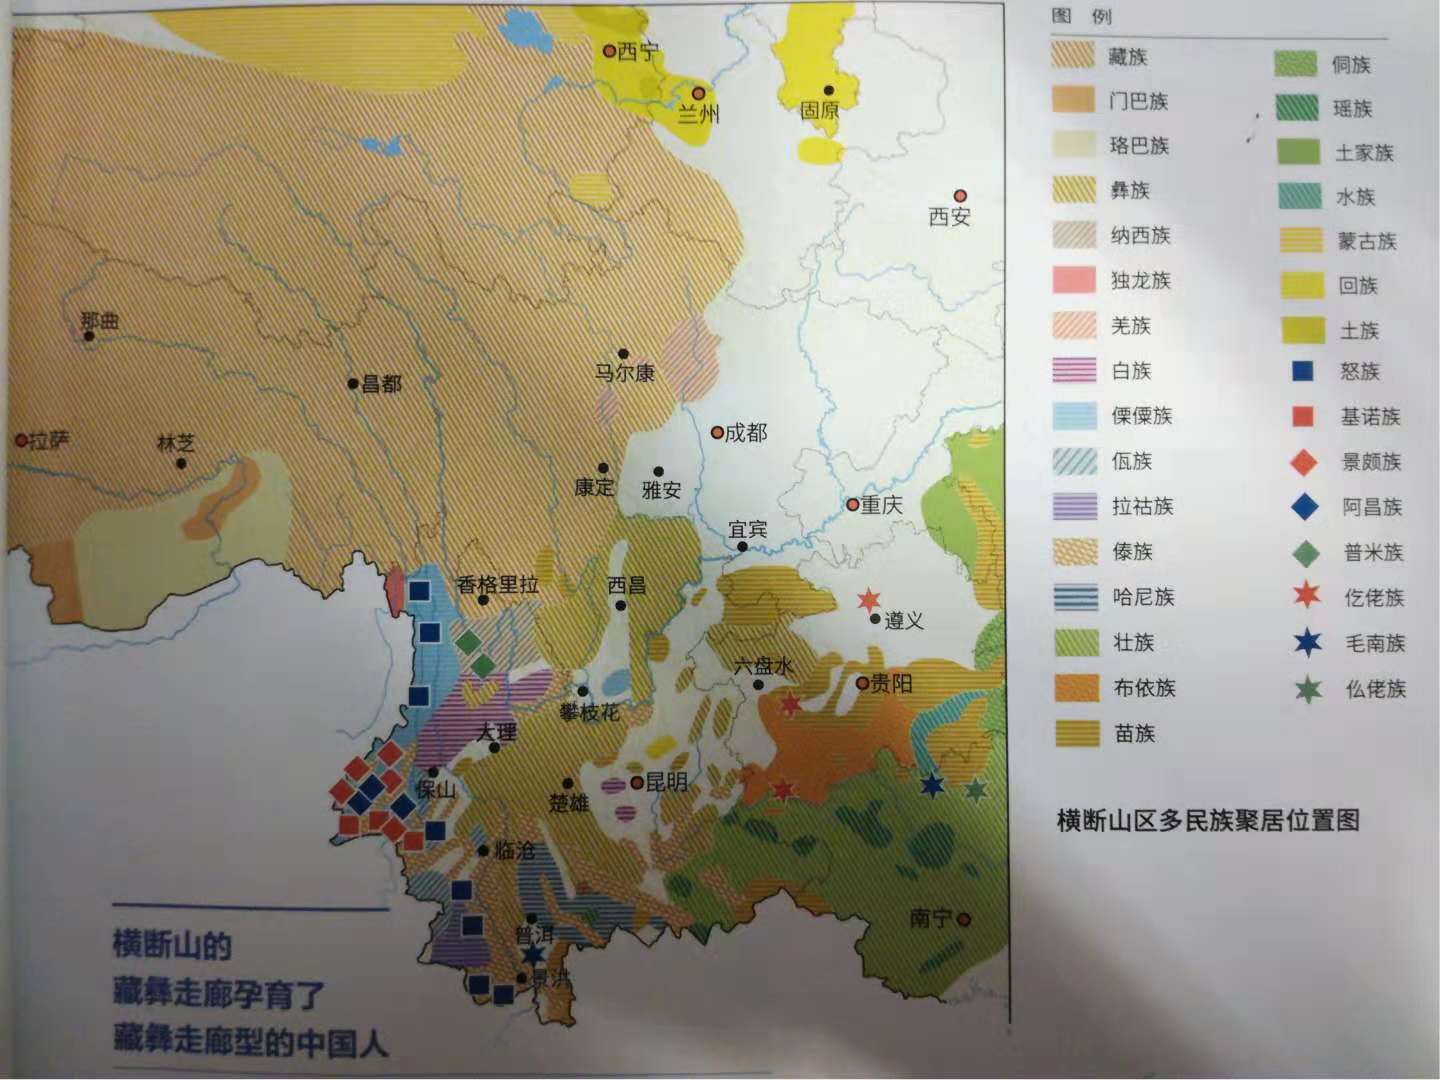 横断山区多民族聚居位置图——中国国家地理十月刊